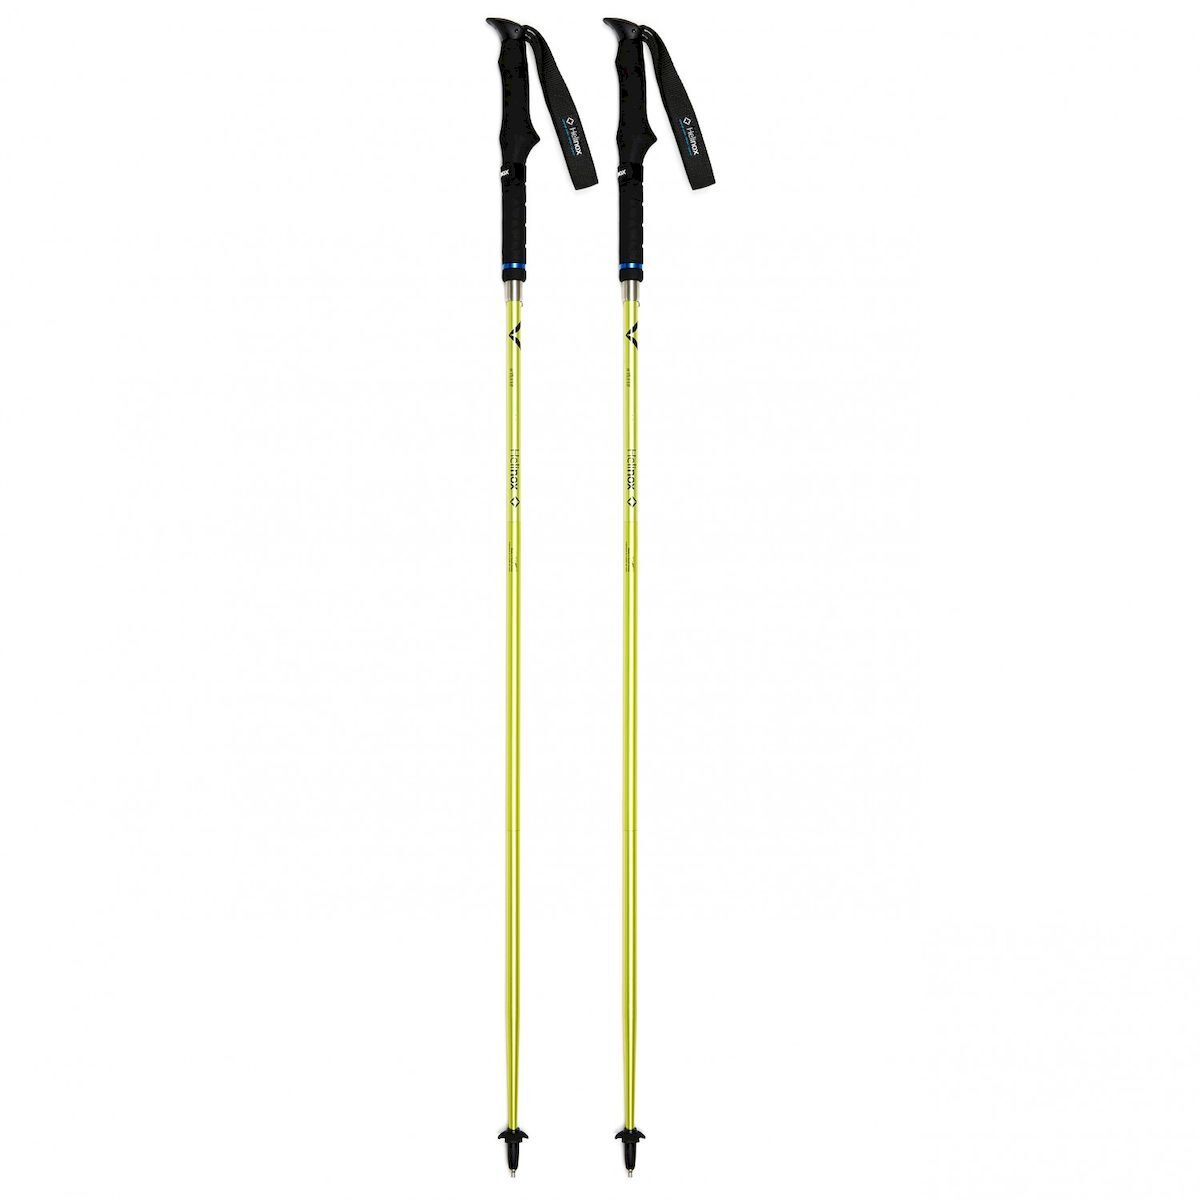 Helinox TL115 - Walking poles